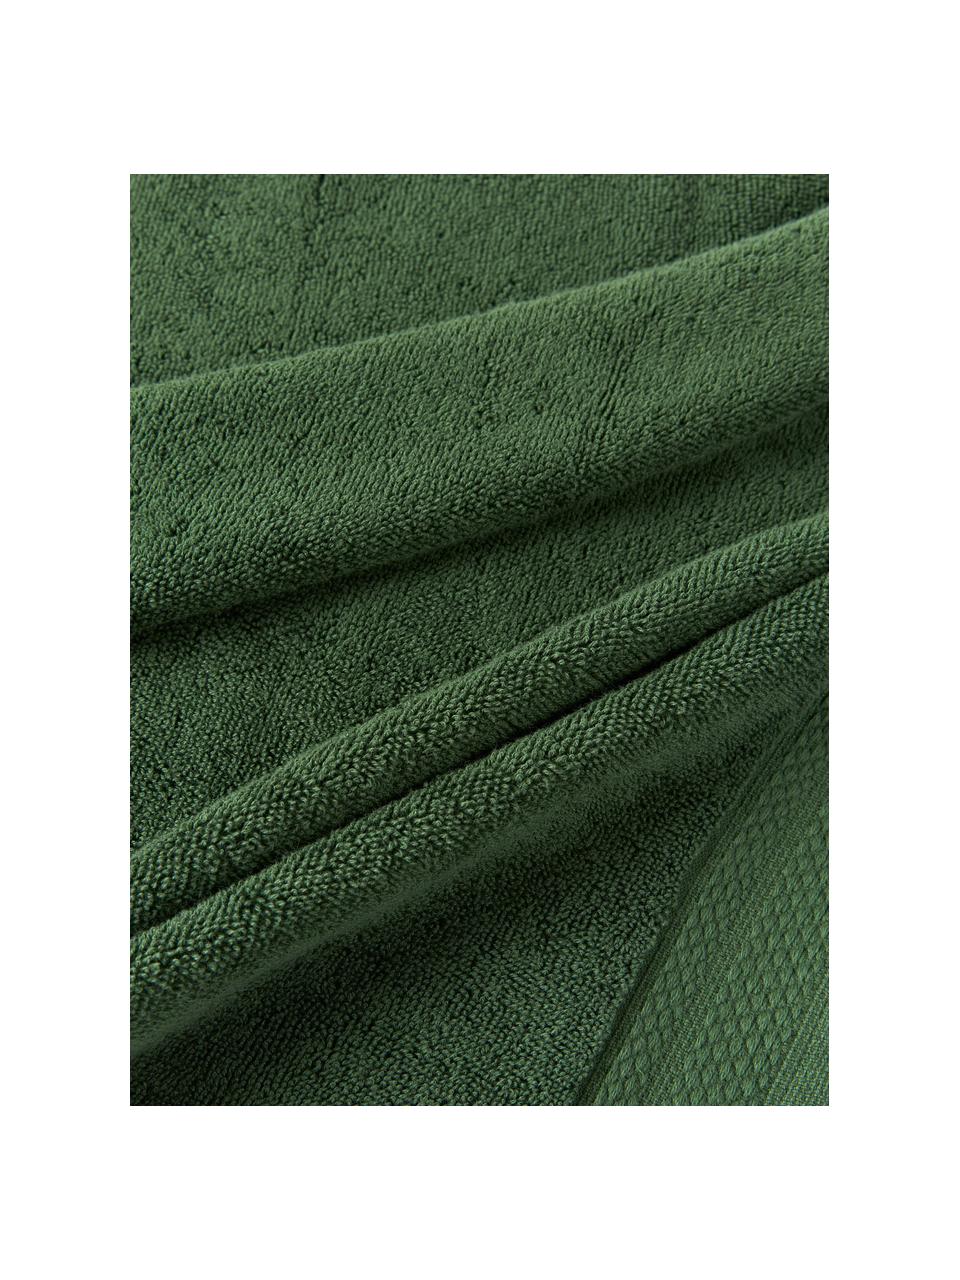 Set de toallas de algodón ecológico Premium, 6 uds., 100% algodón con certificado GOTS
Gramaje superior 600 g/m²

El material utilizado para este producto ha sido probado contra sustancias nocivas y está certificado según el STANDARD 100 por OEKO-TEX®,, IS025 189577, OETI., Verde oscuro, Set de diferentes tamaños